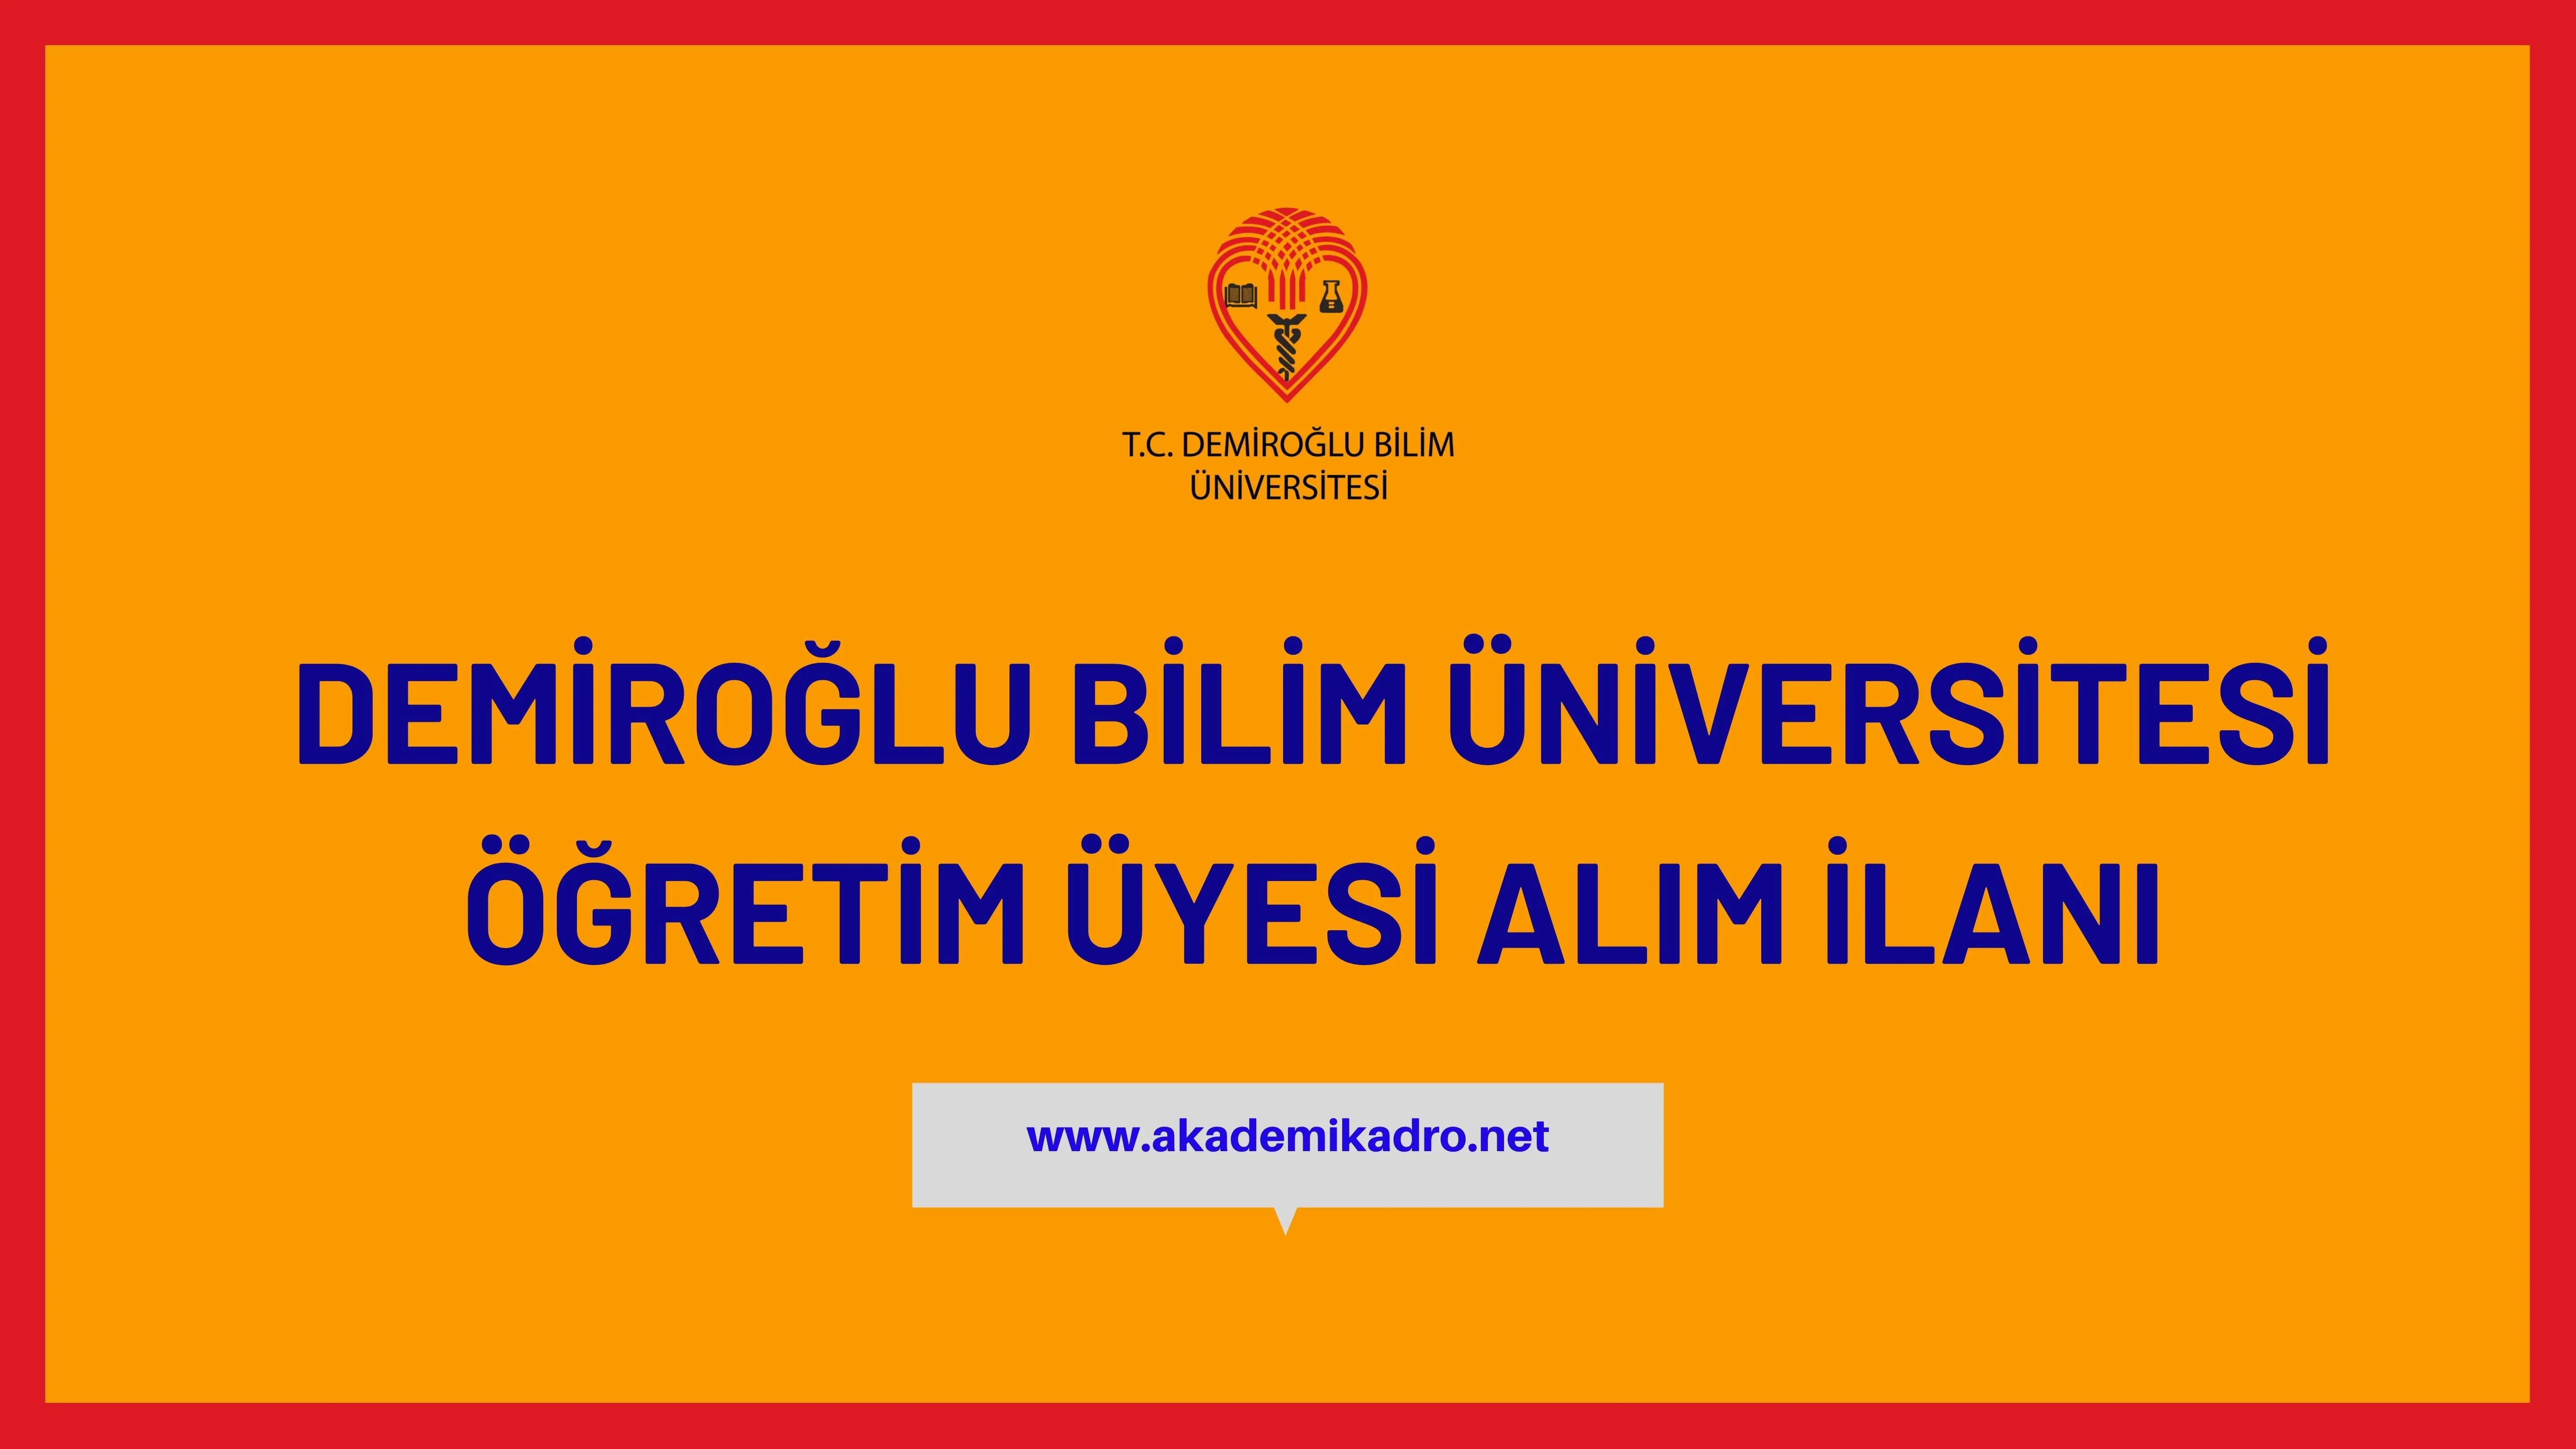 Demiroğlu Bilim Üniversitesi 3 akademik personel alacak